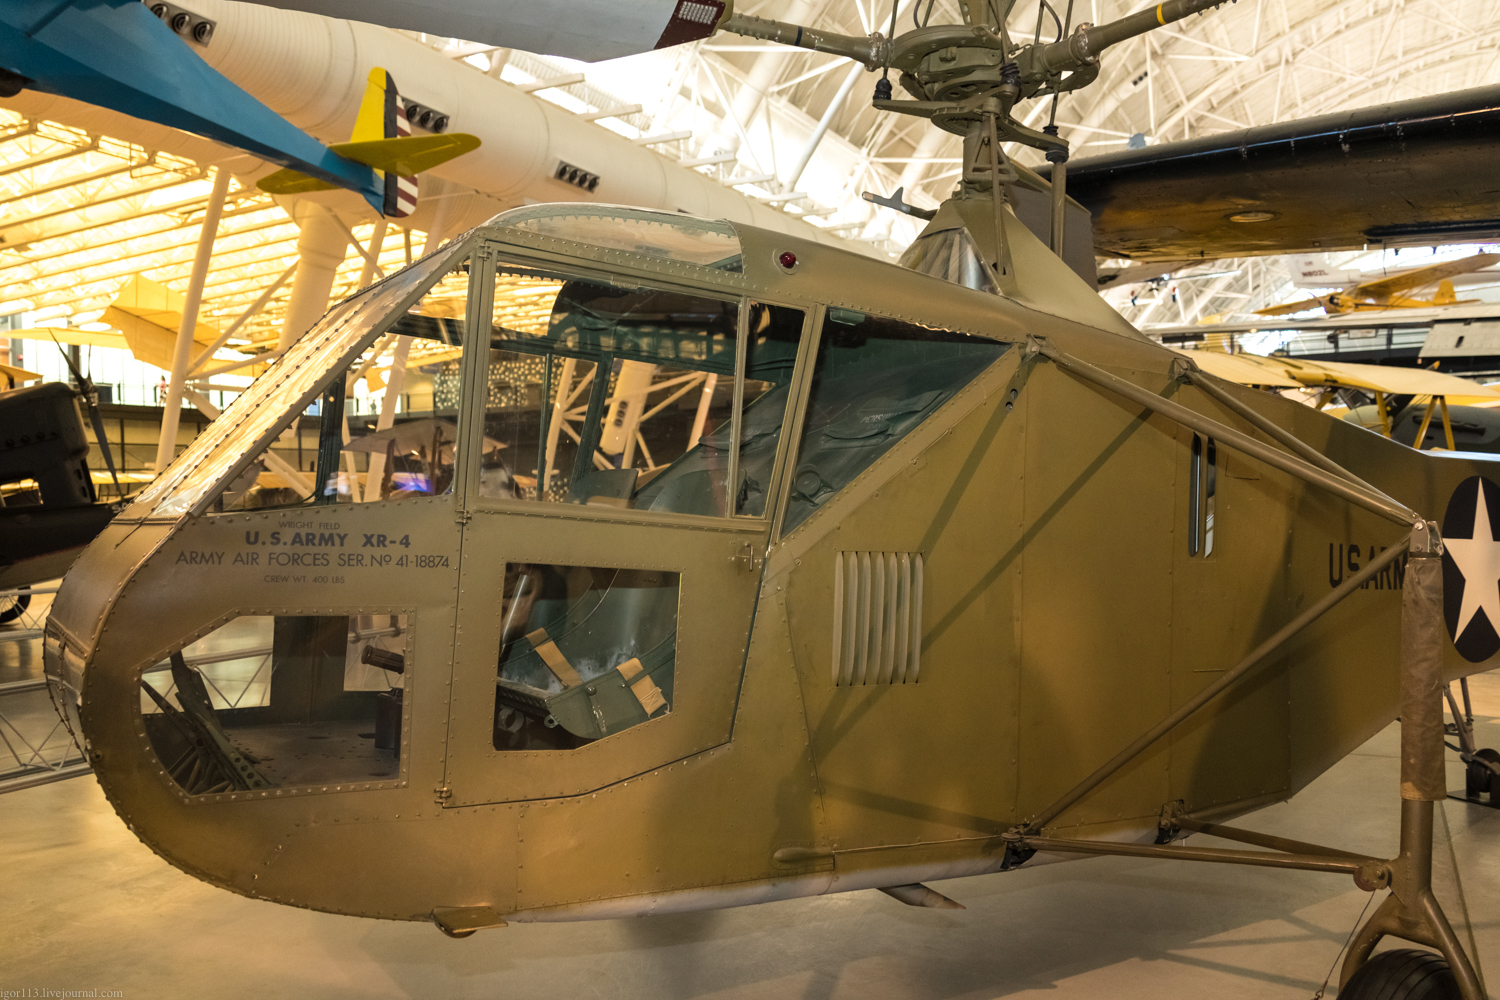  Steven f udvar-hazy center,2018 год: первый в мире серийный вертолет Sikorsky 